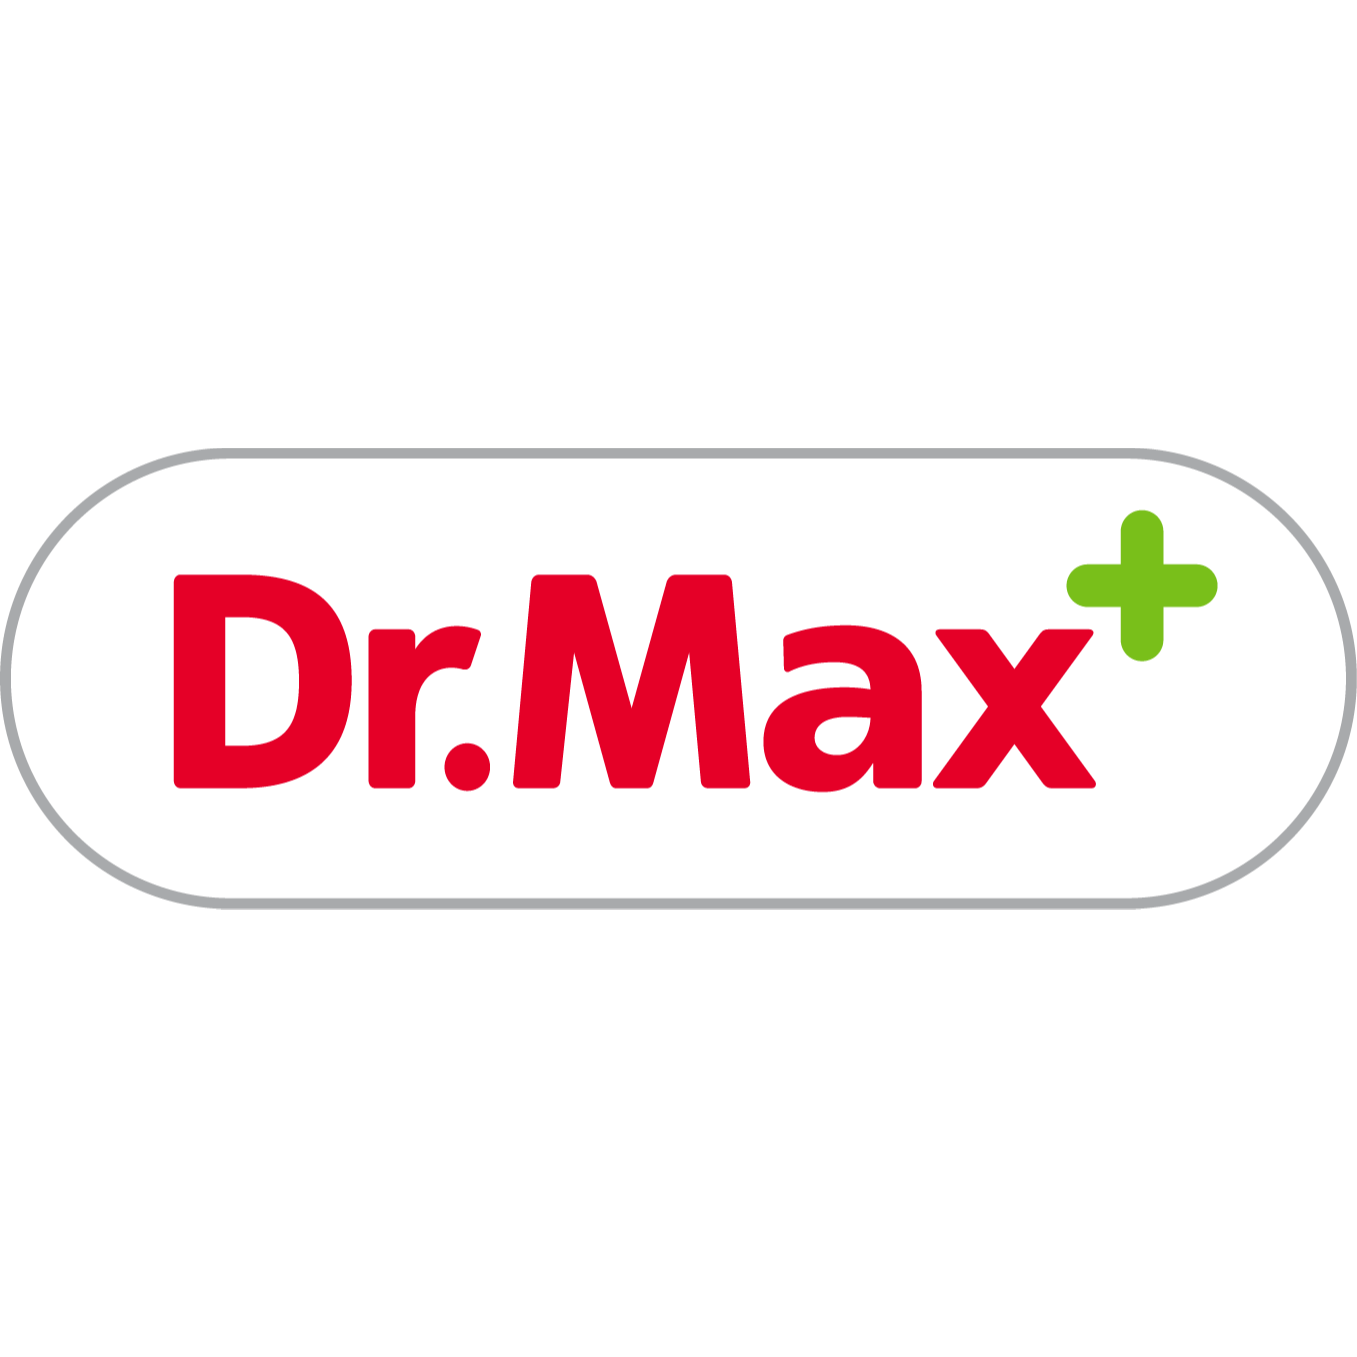 Farmacia Dr.Max - Farmacie Veronella